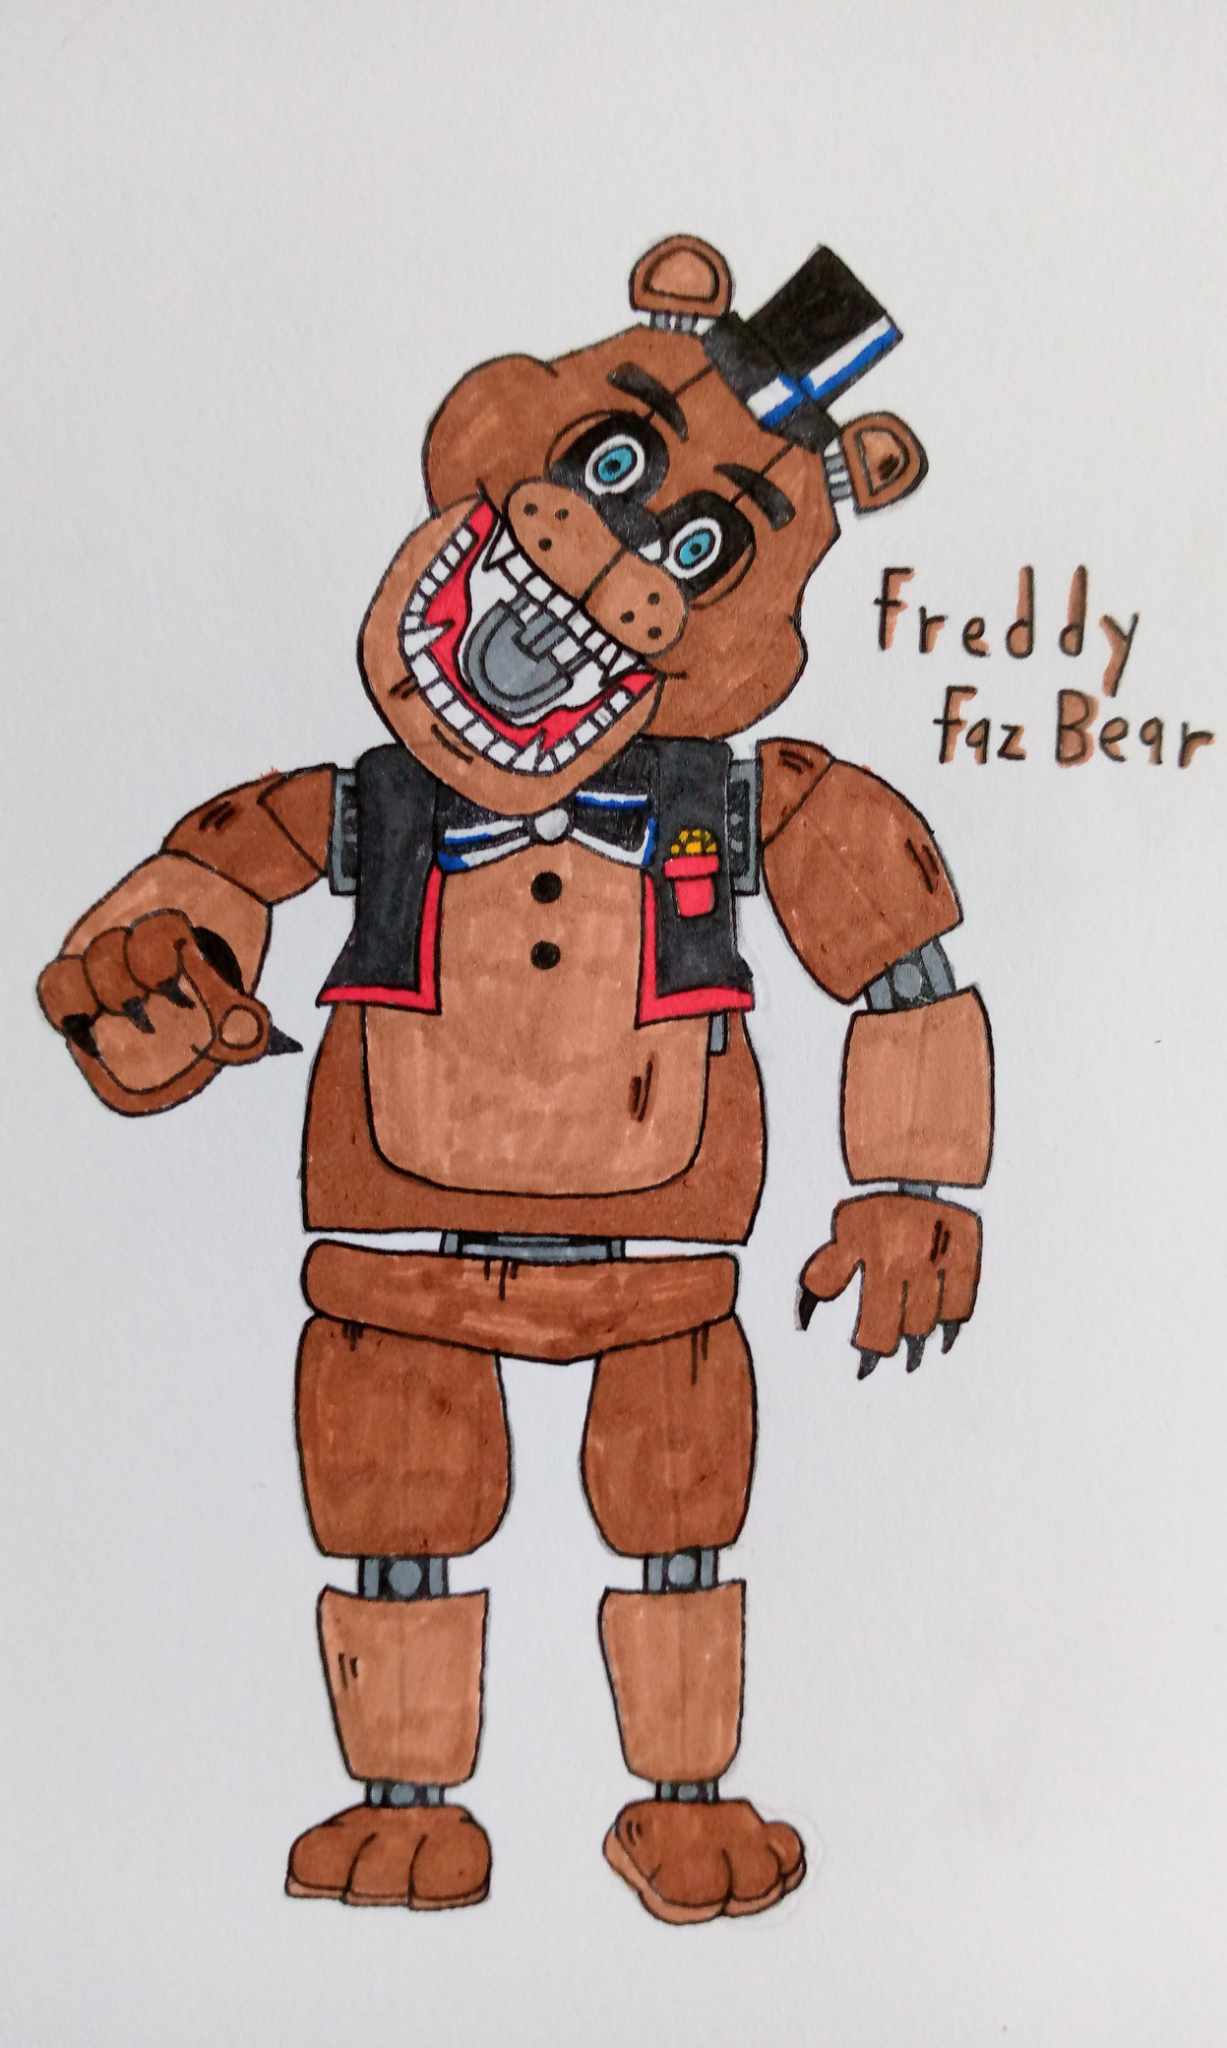 Freddy Fazbear Fnaf 1 by emirtah on DeviantArt